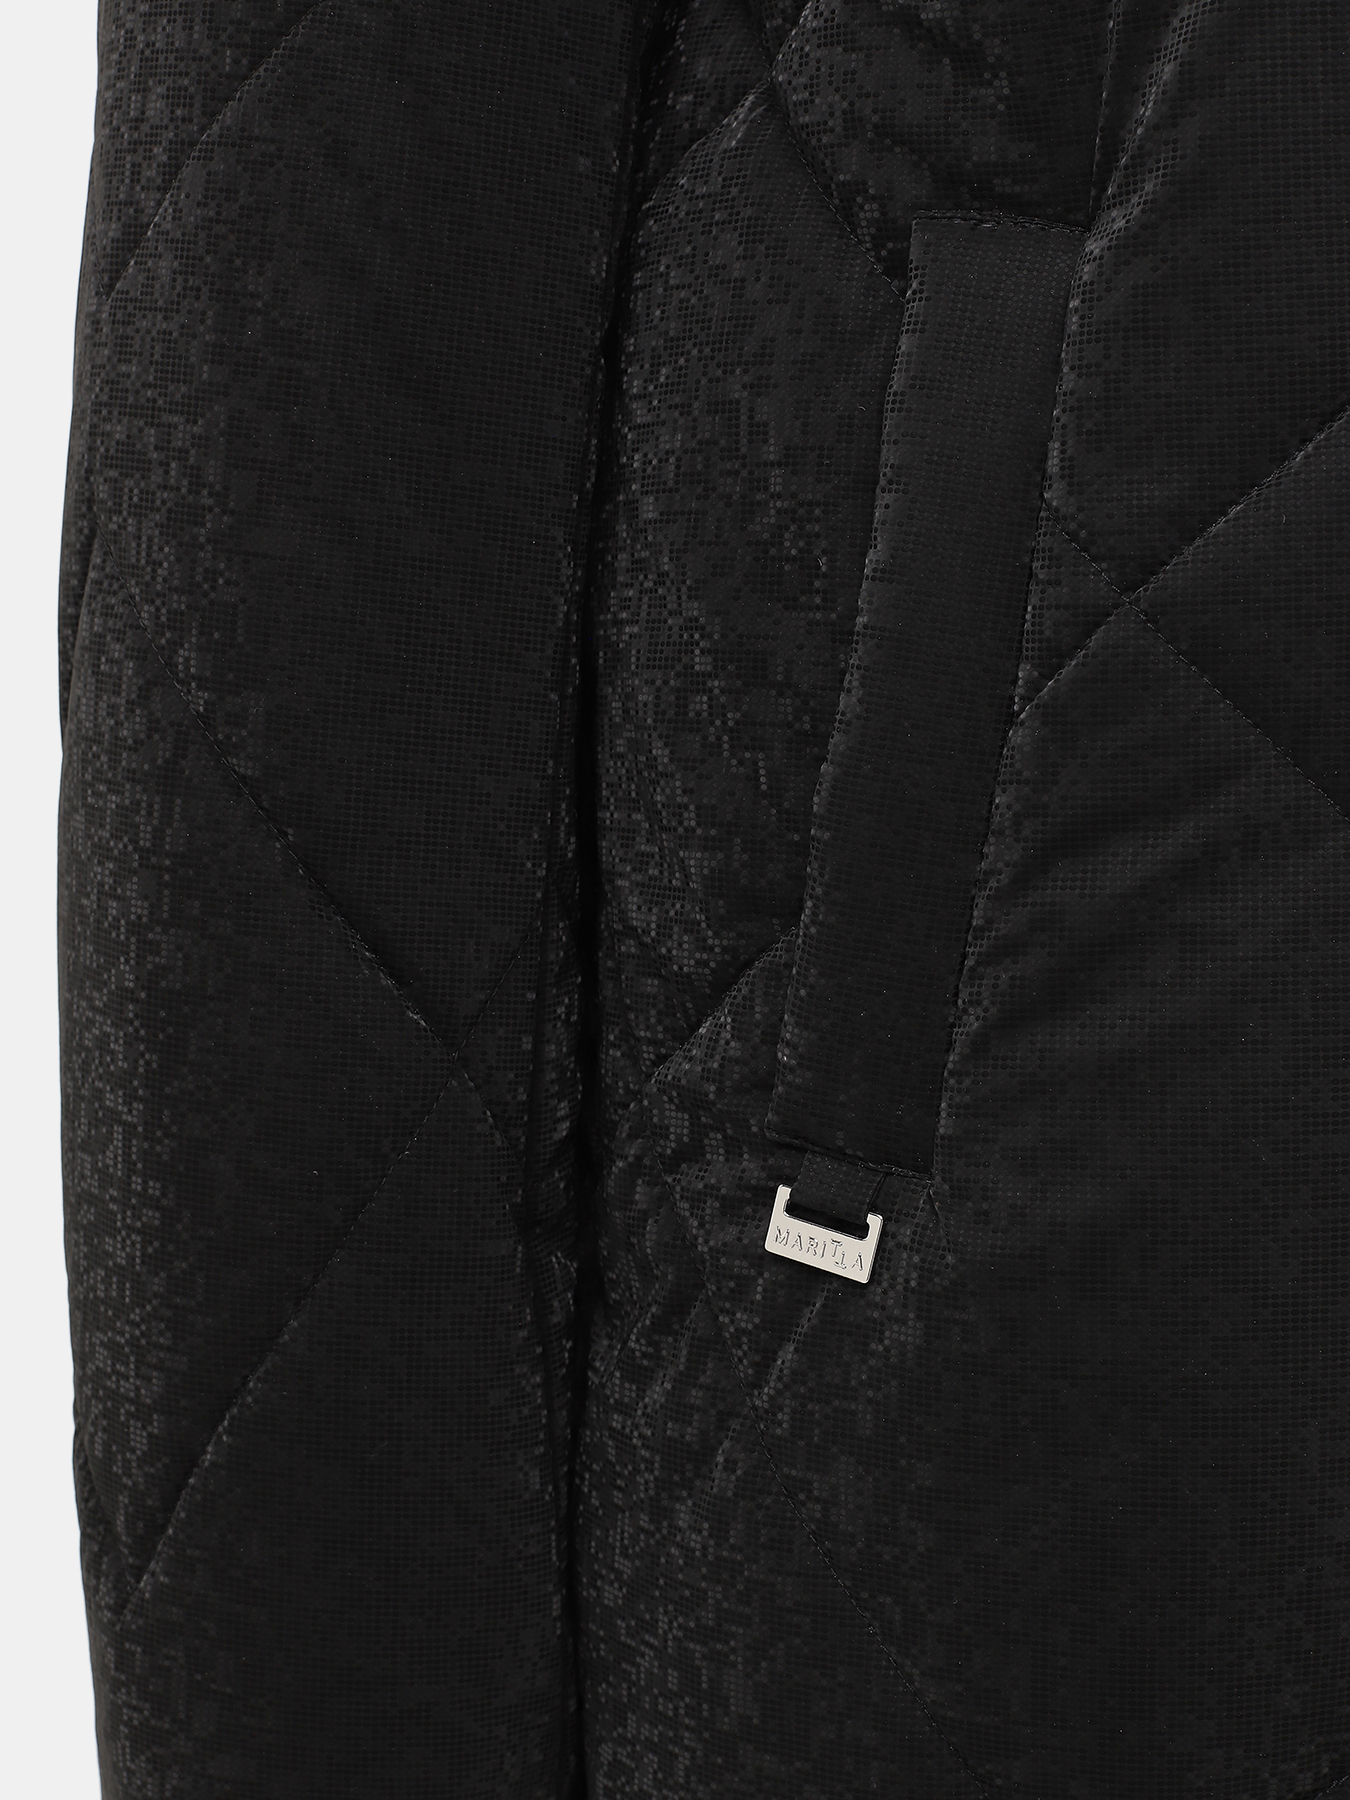 Пальто зимнее Maritta 433524-025, цвет черный, размер 48 - фото 5